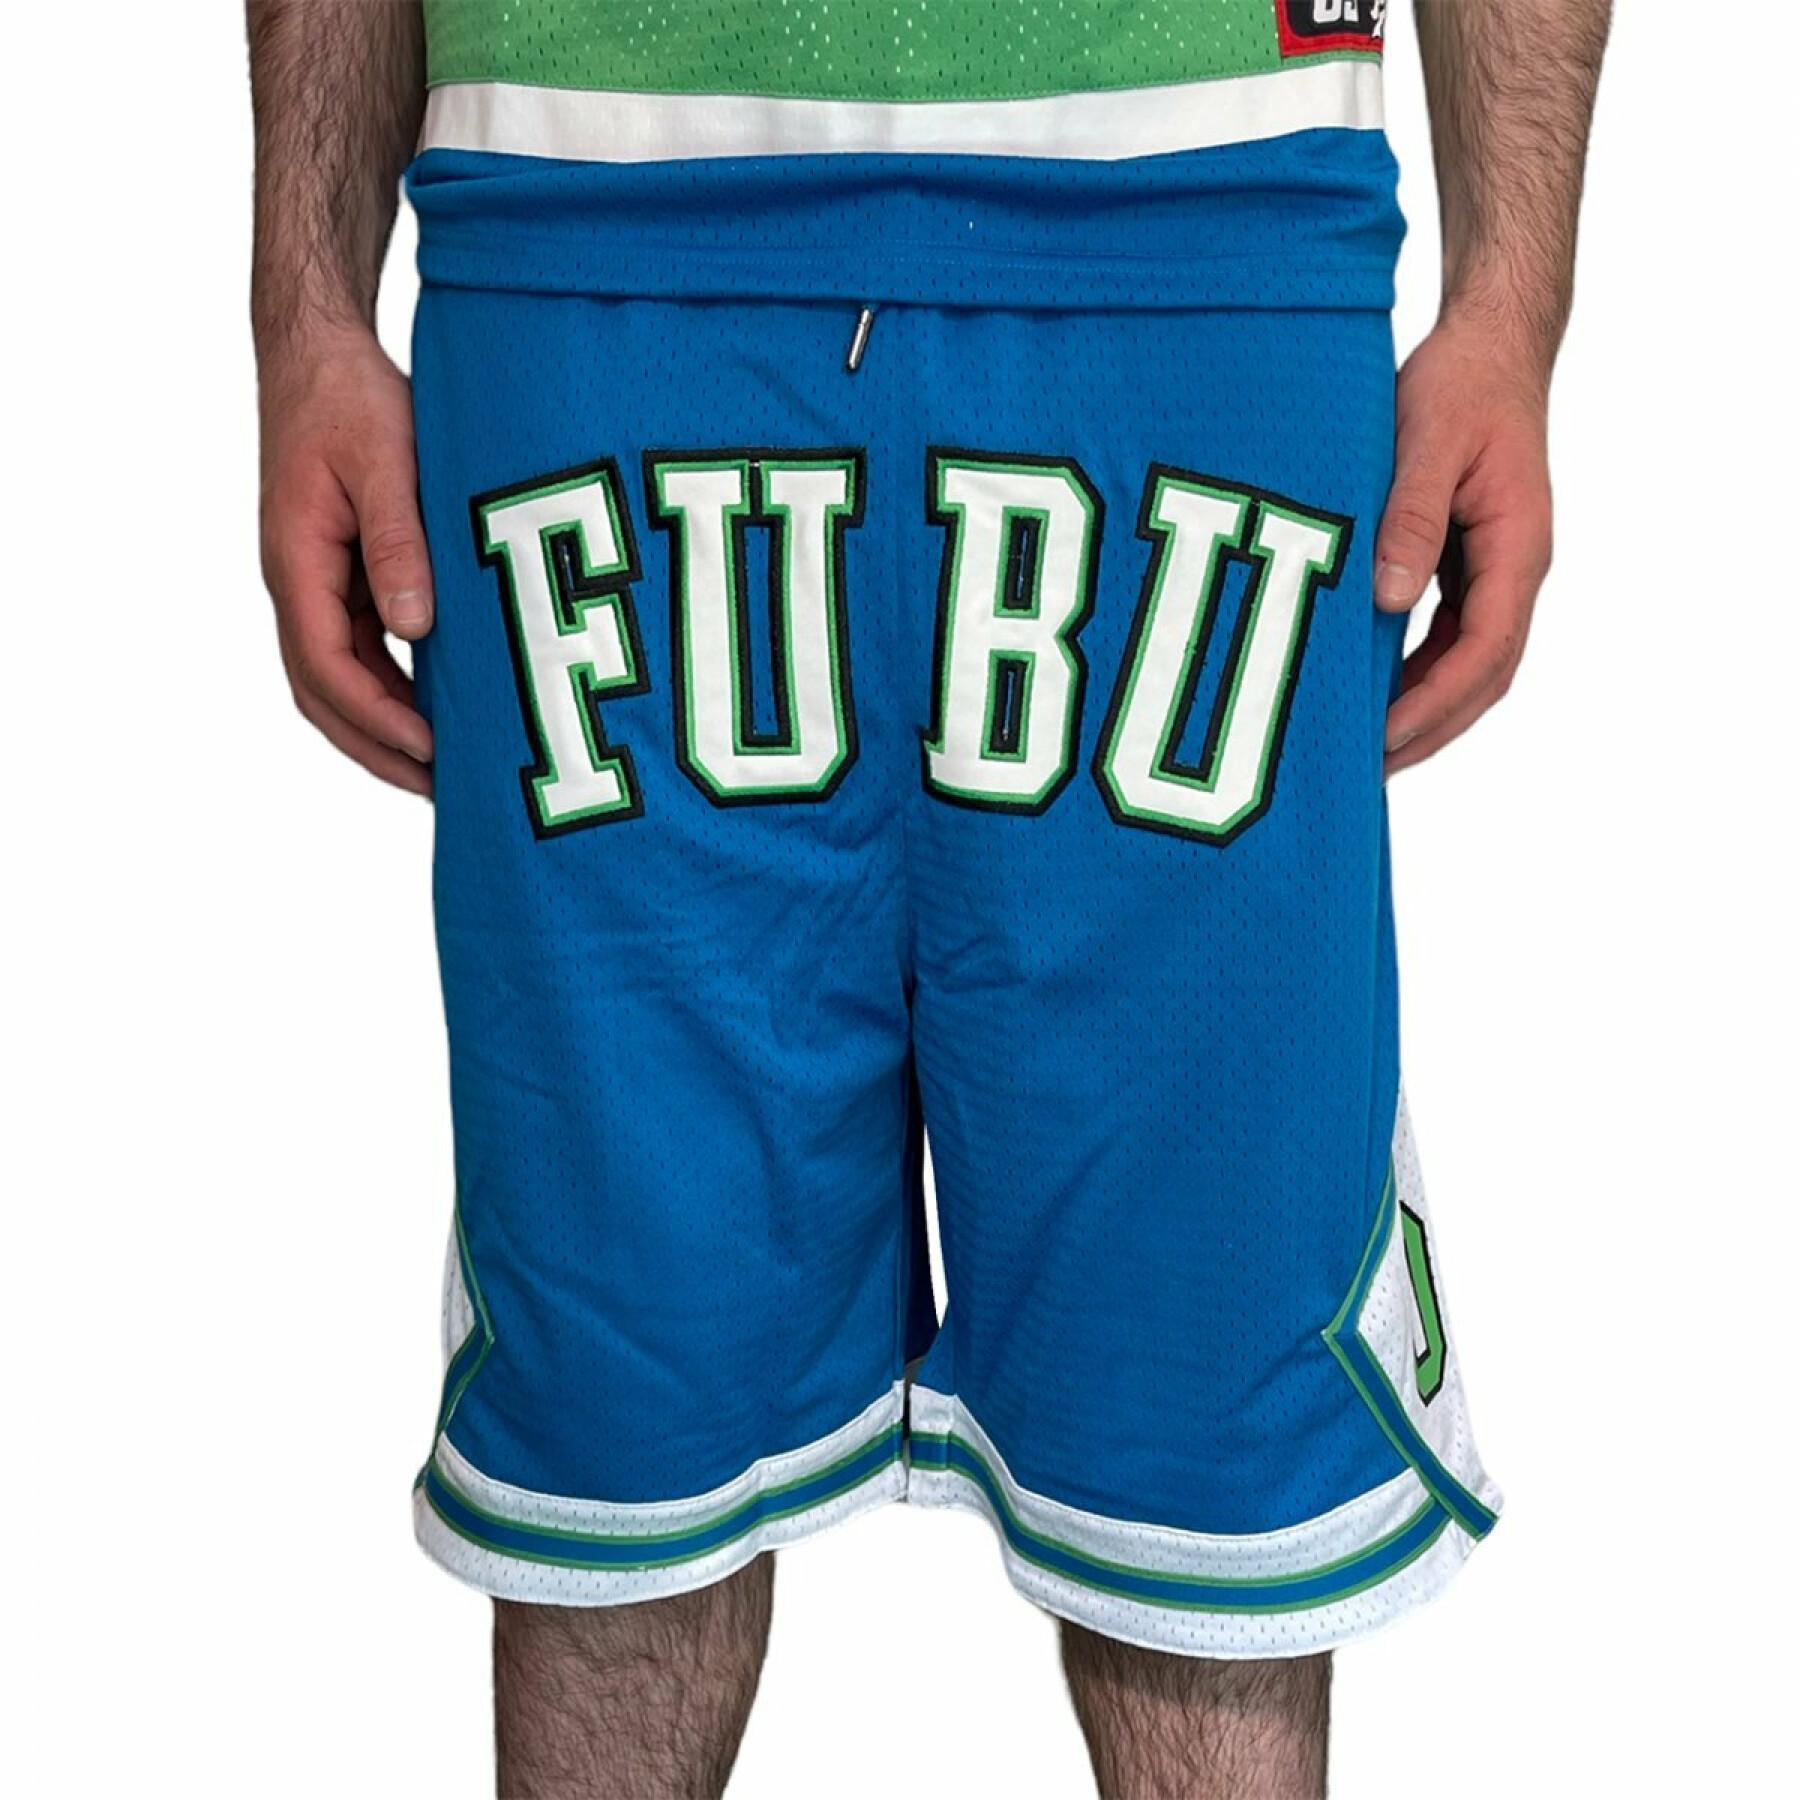 Short Fubu College Mesh - Shorts - Clothing - Men